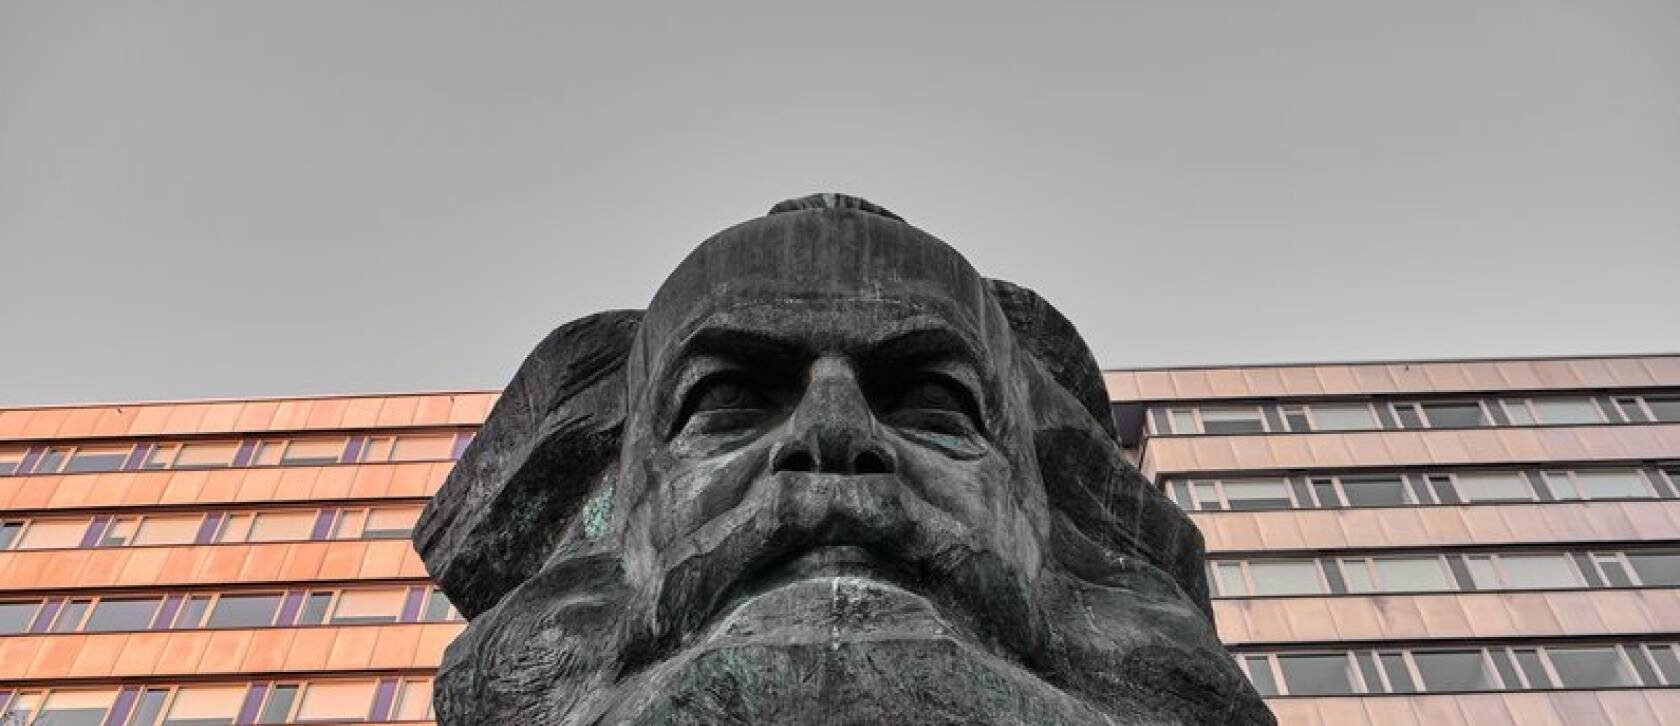 Karl Marx monument in Chemnitz.